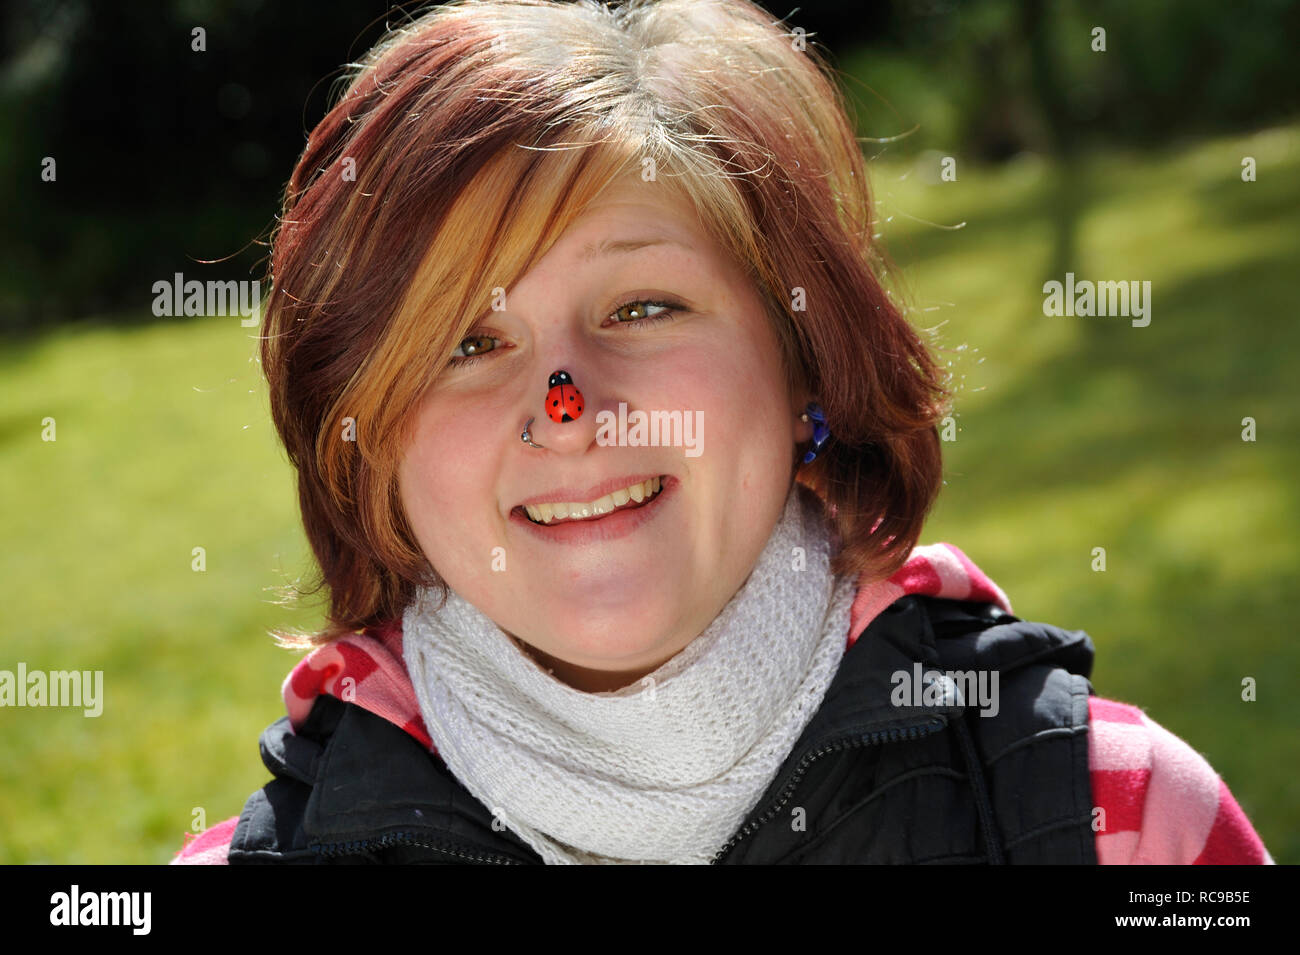 jungendliche Frau mit Marienkäfer auf der Nase | young woman having a beatle on her nose Stock Photo